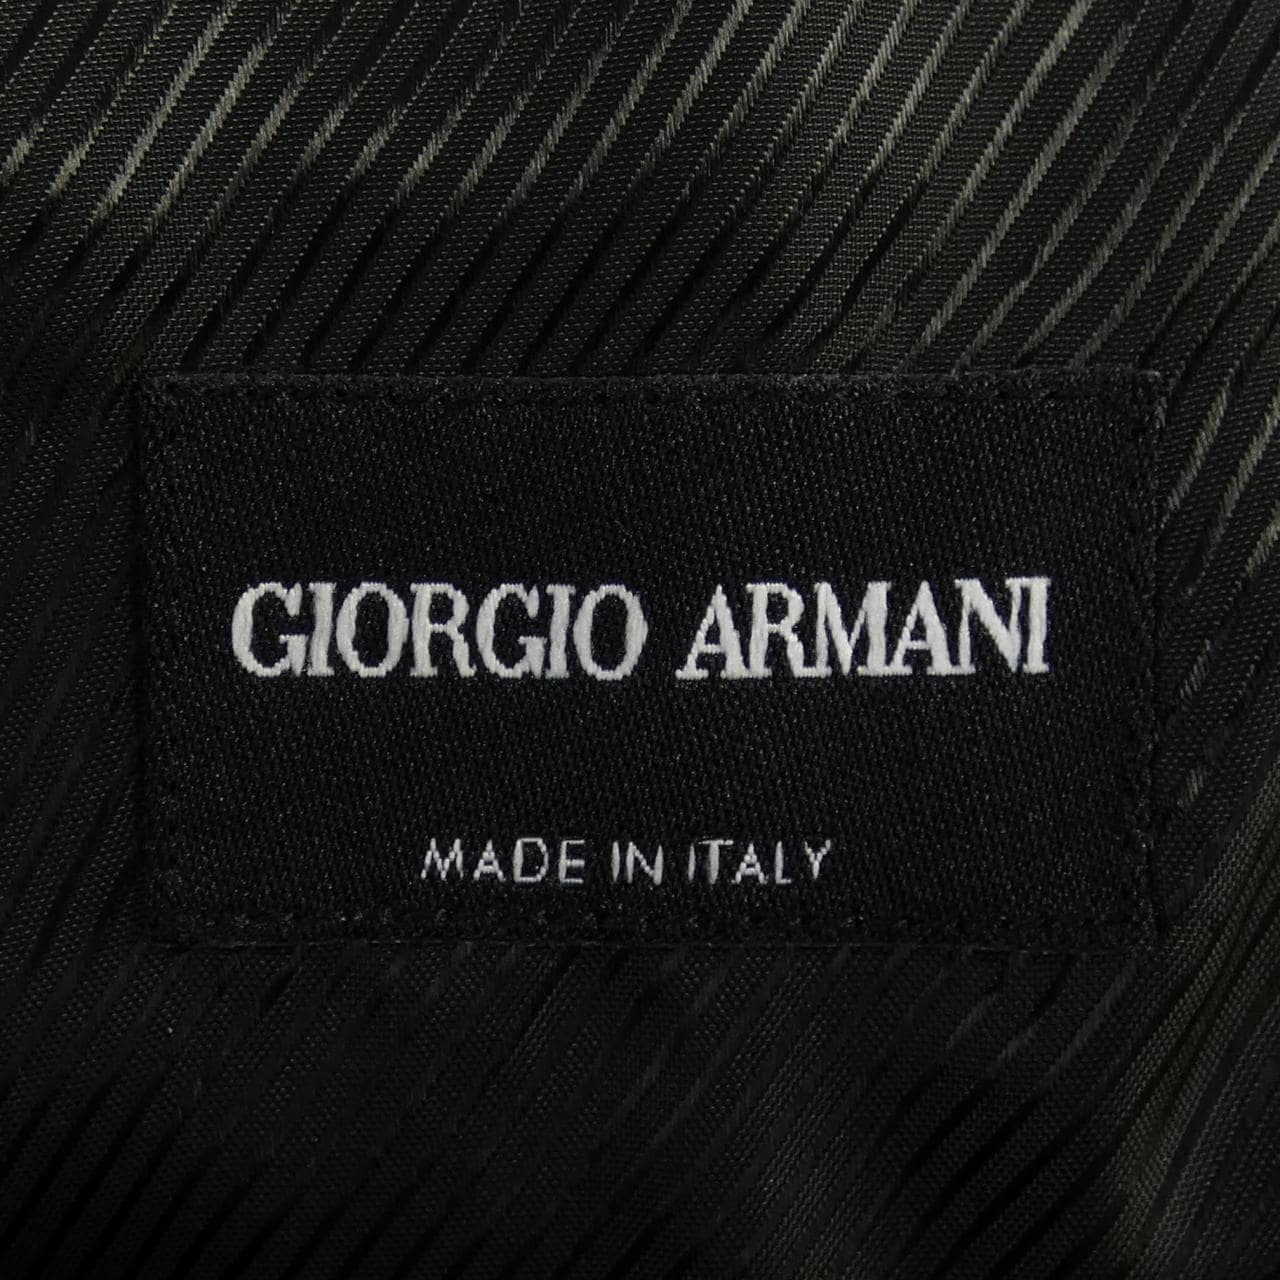 Giorgio Armani GIORGIO ARMANI Vest